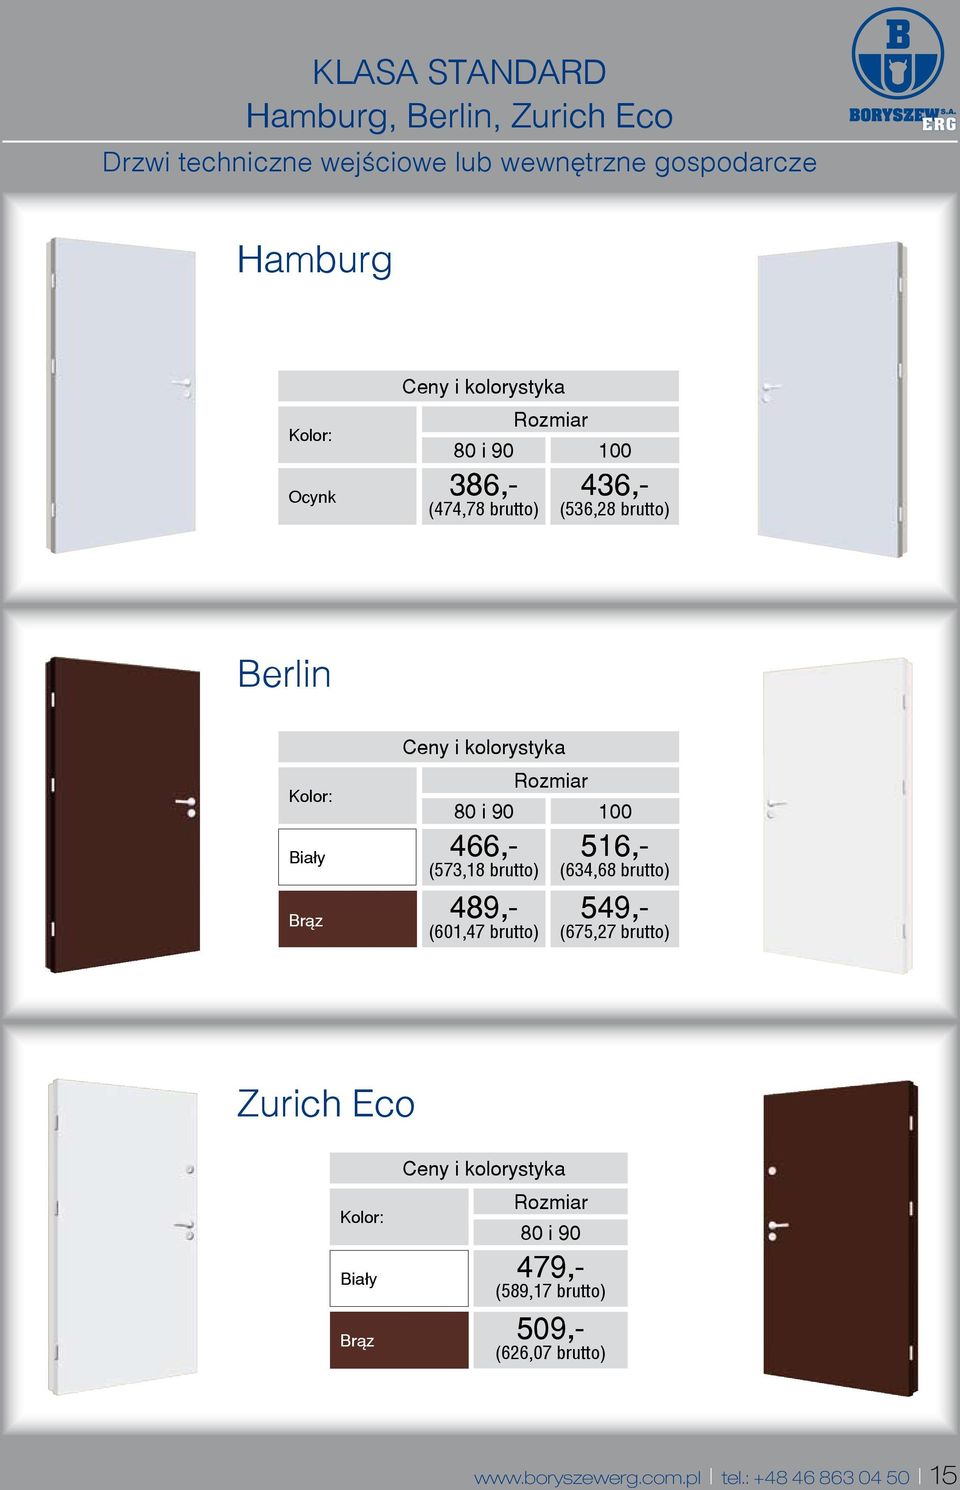 516,- (573,18 brutto) (634,68 brutto) Br¹z 489,- 549,- (601,47 brutto) (675,27 brutto) Zurich Eco